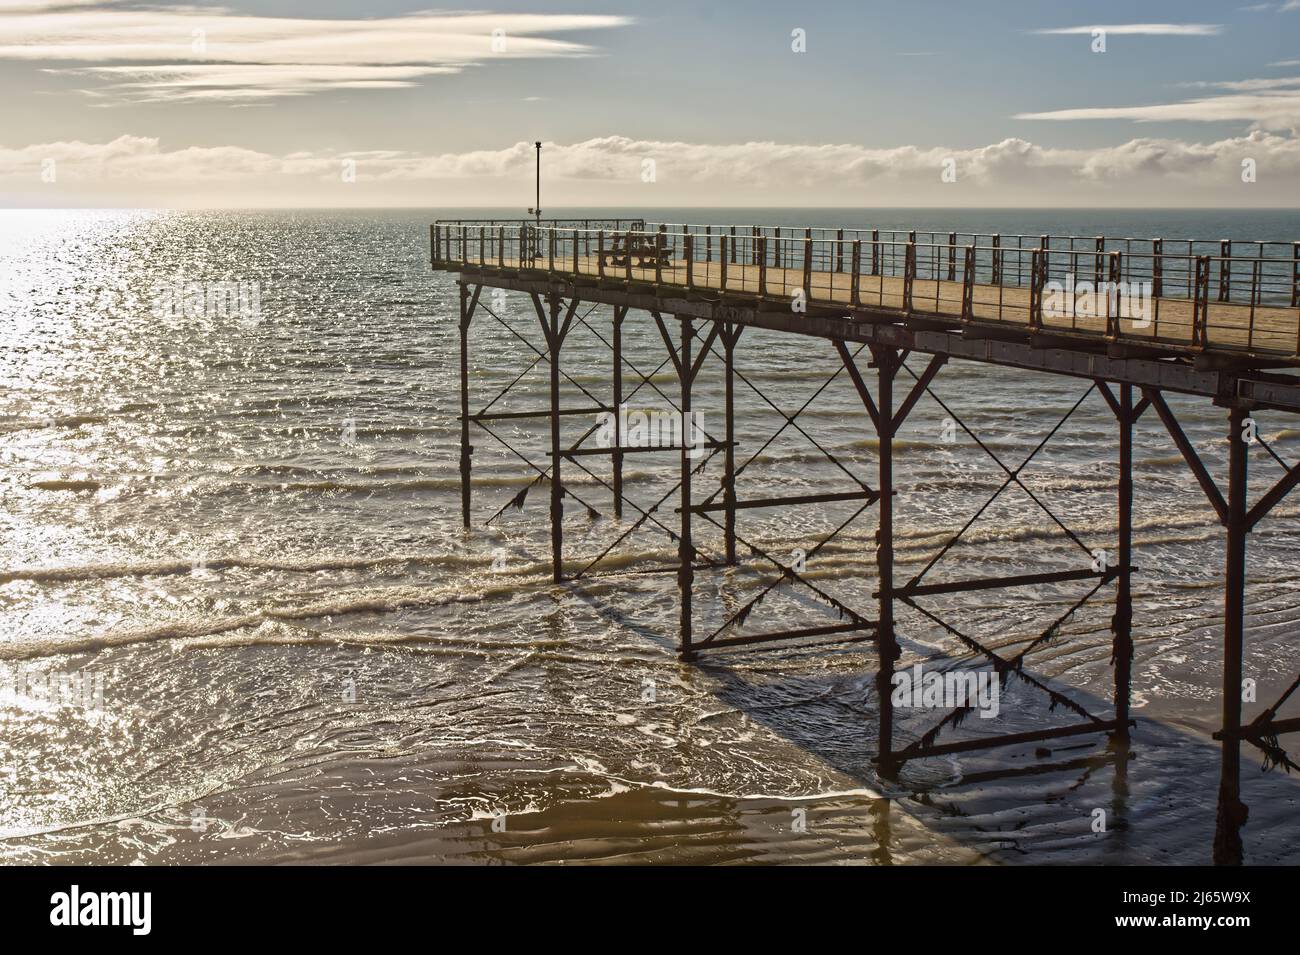 Pier at Bognor Regis in West Sussex, England Stock Photo